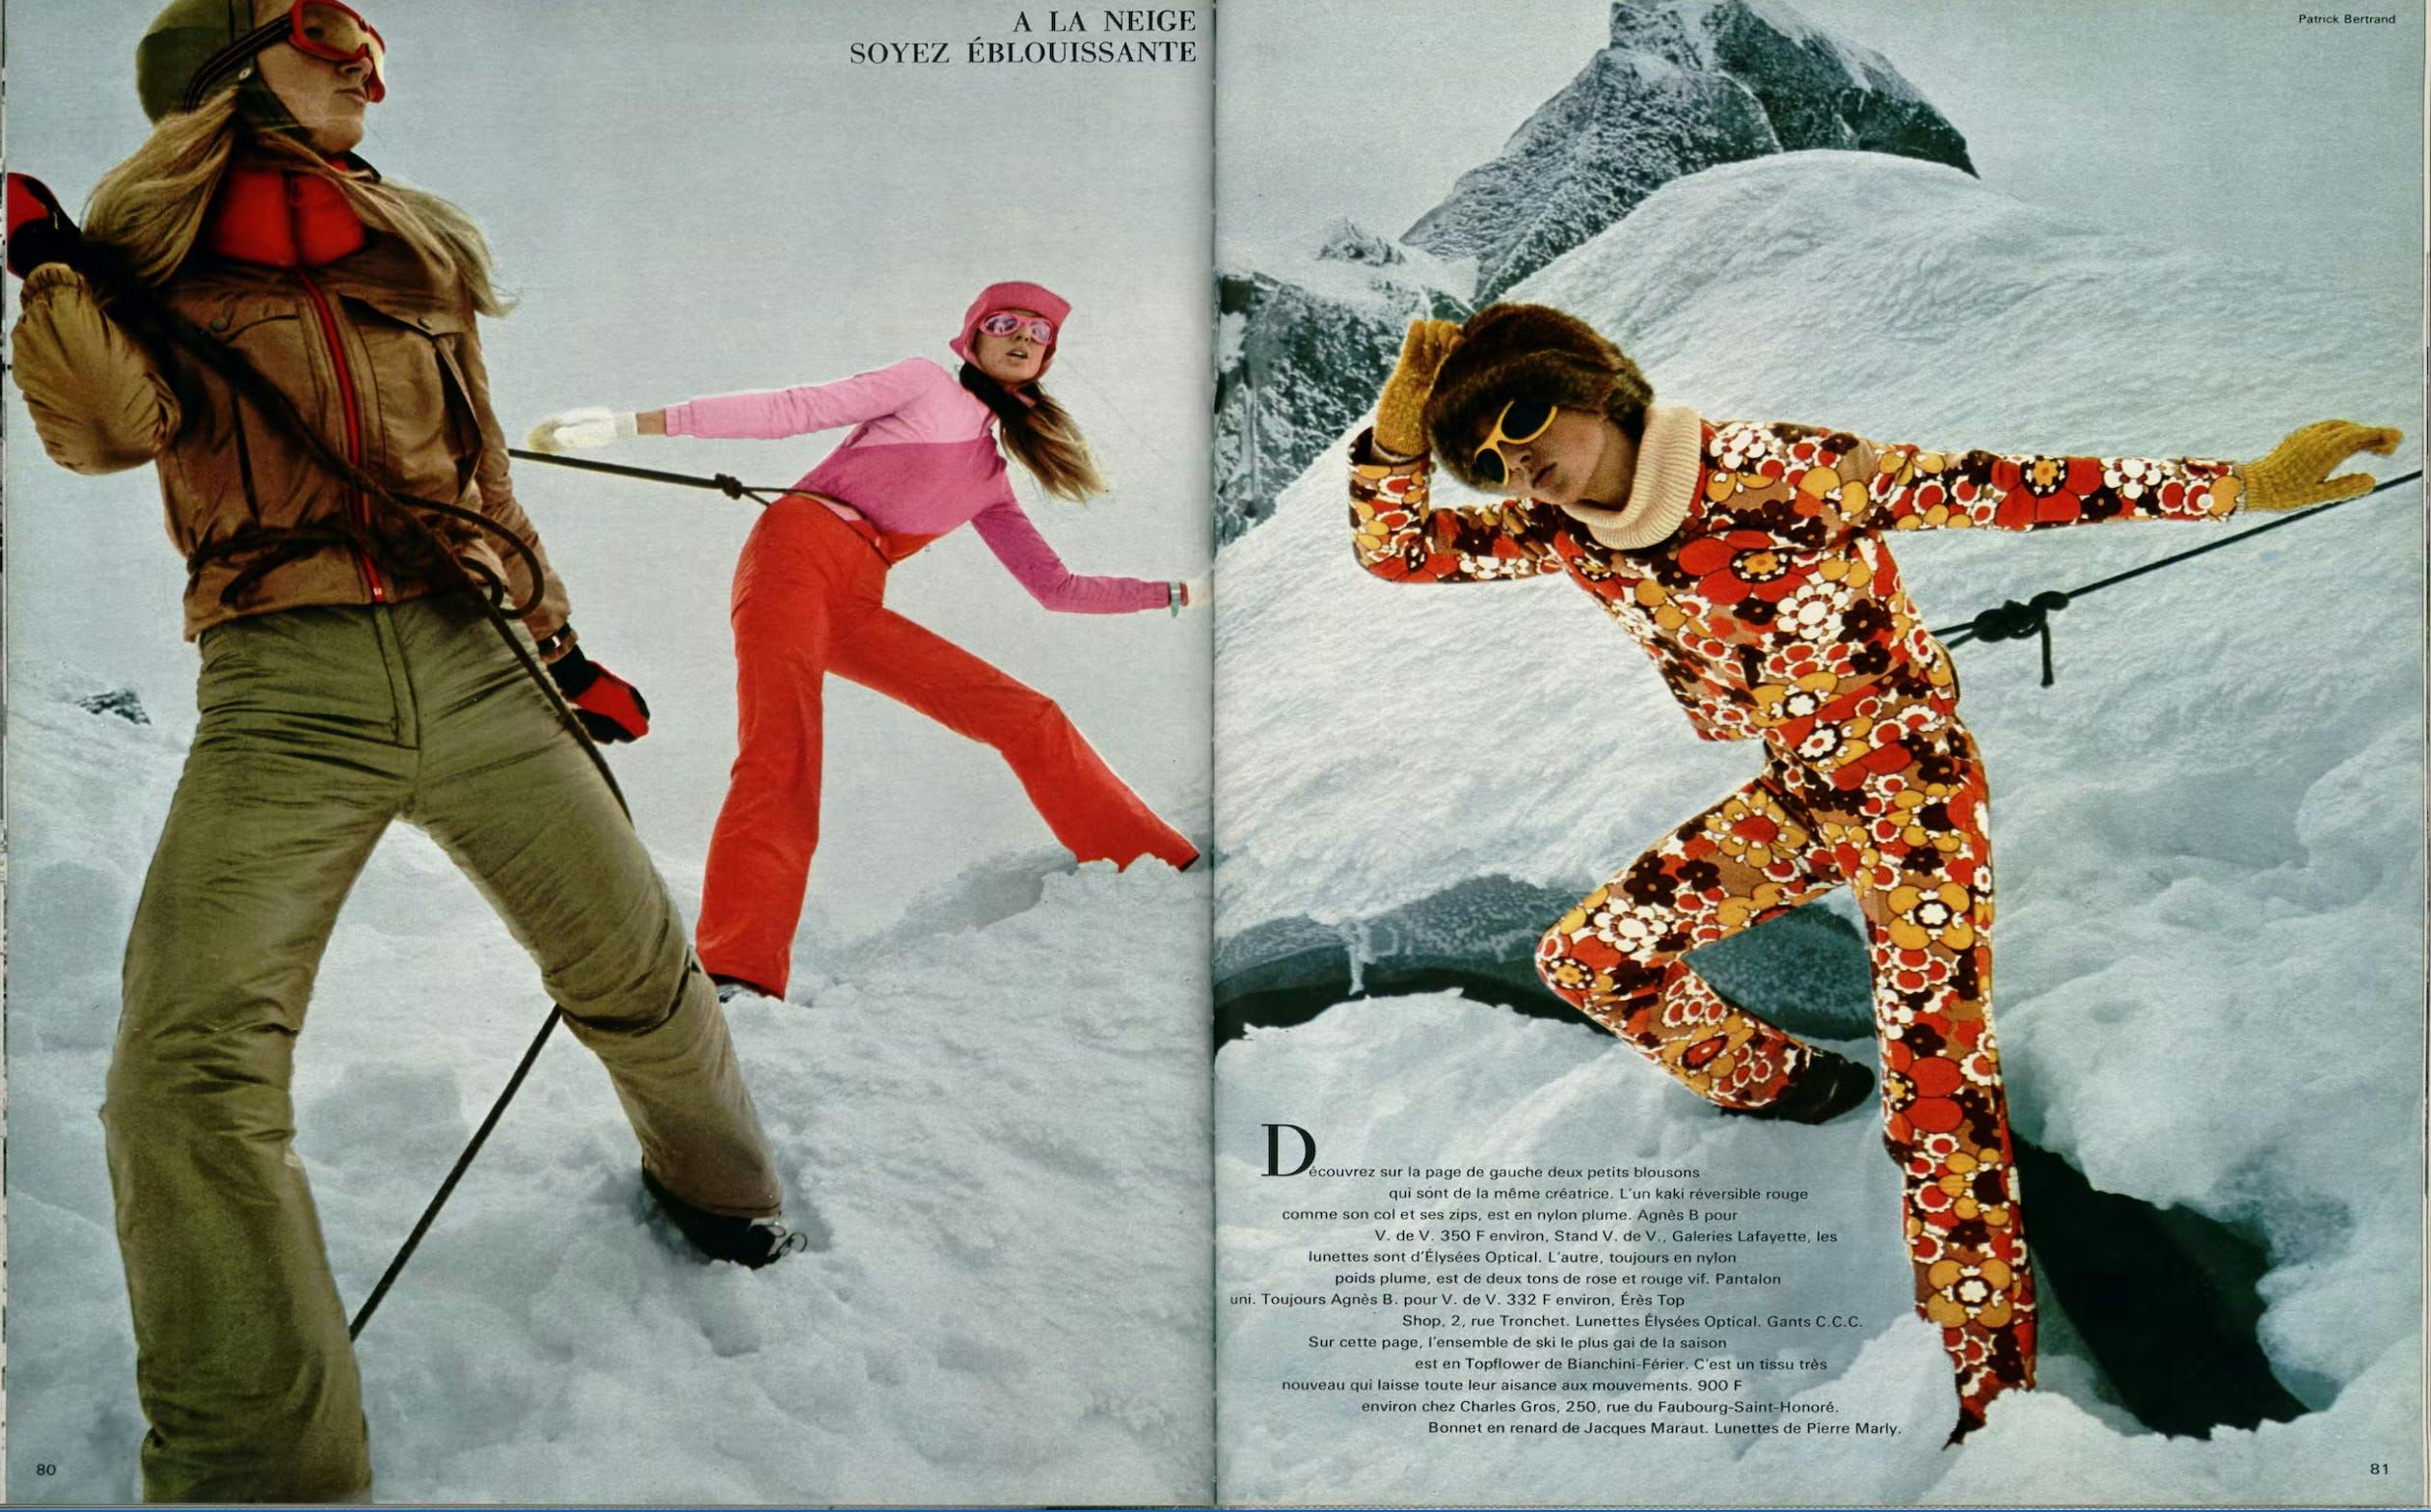 L'Officiel archive skiwear 70s